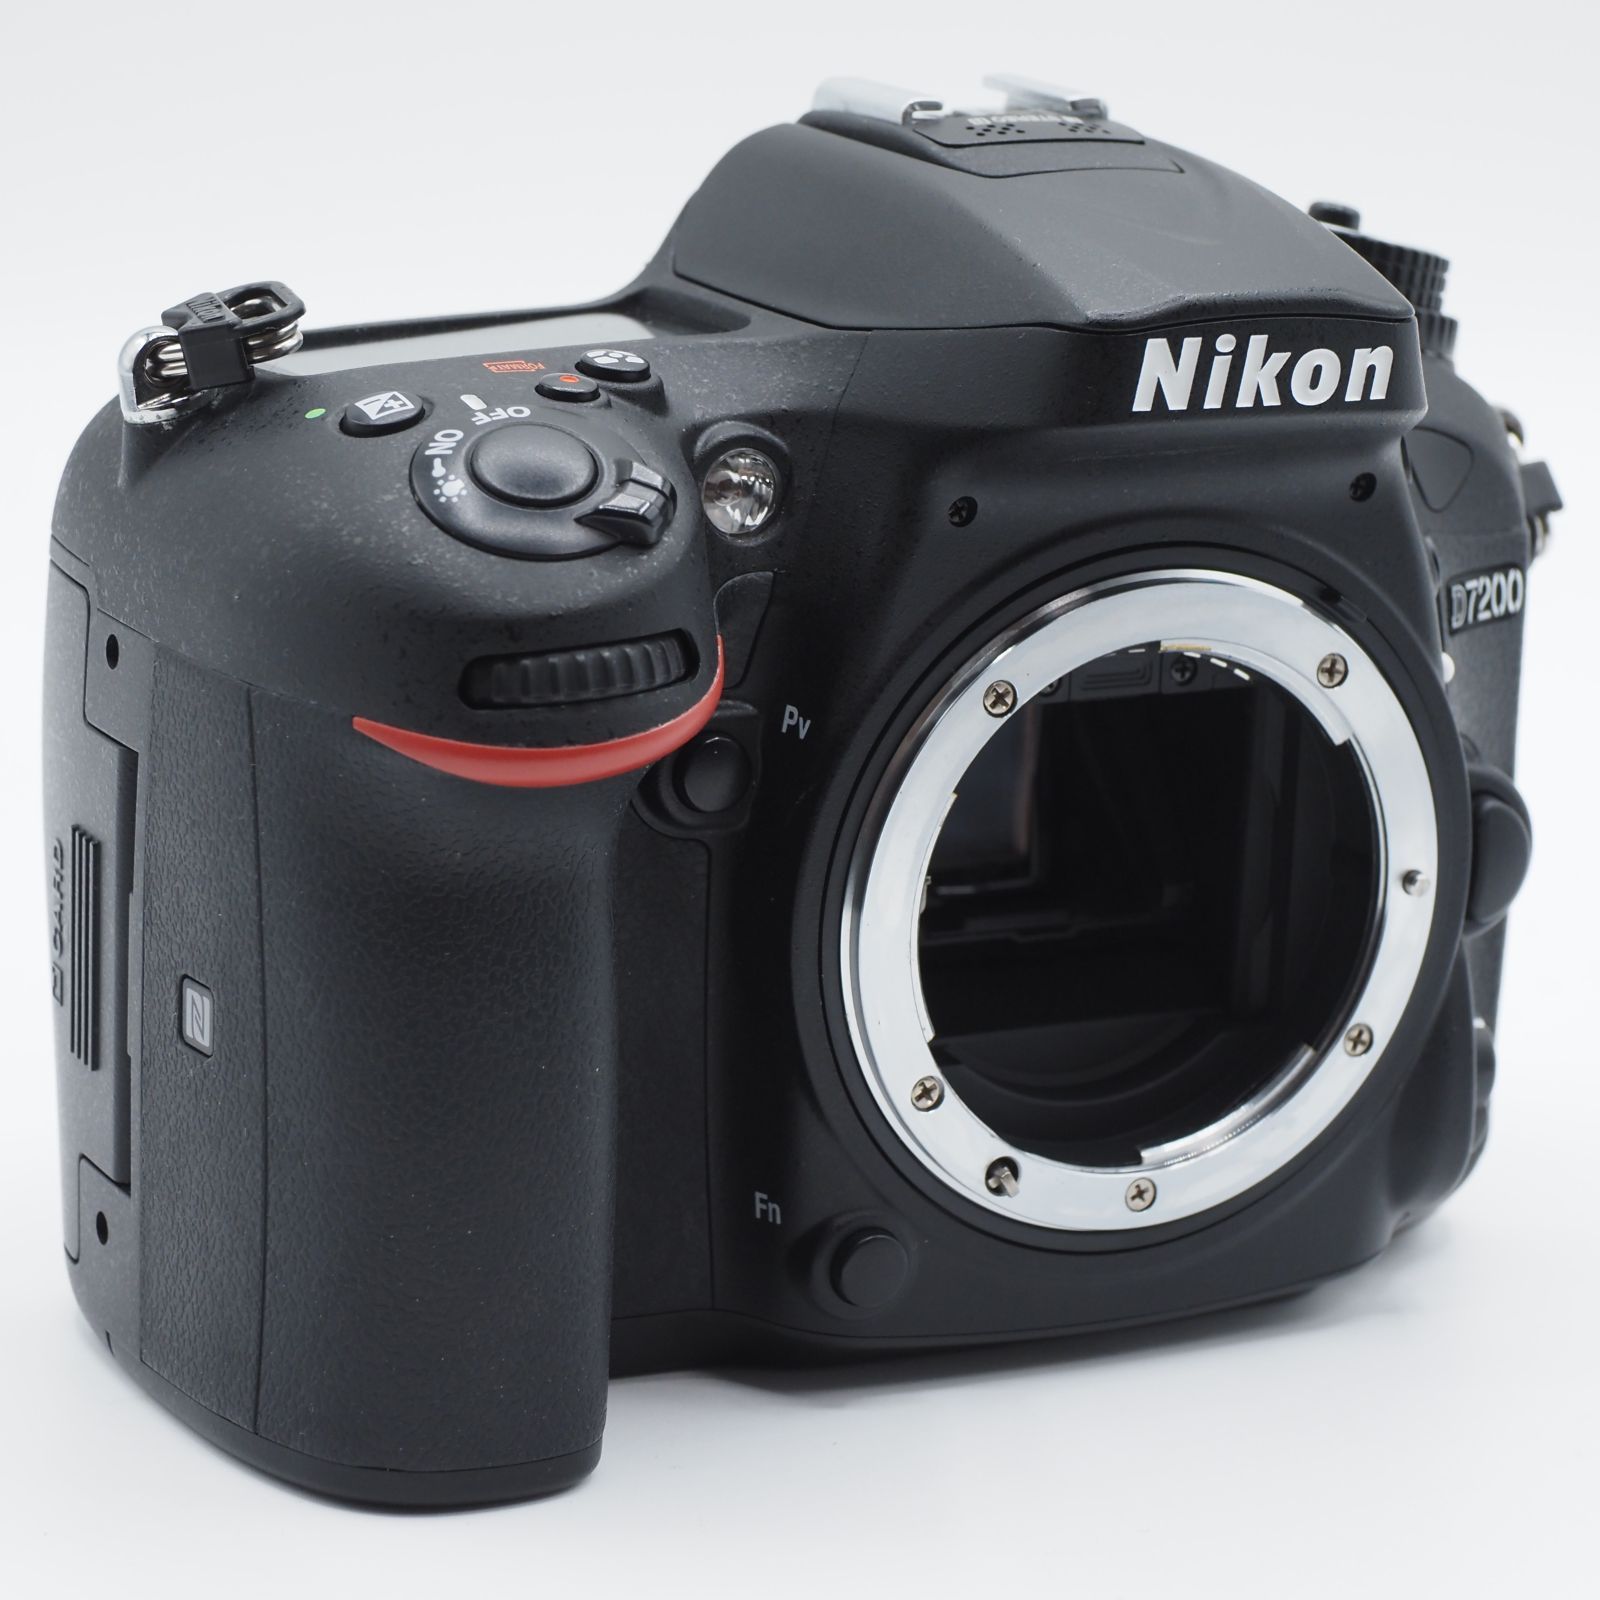 ☆ショット数12,718回・新品級☆ Nikon デジタル一眼レフカメラ D7200 